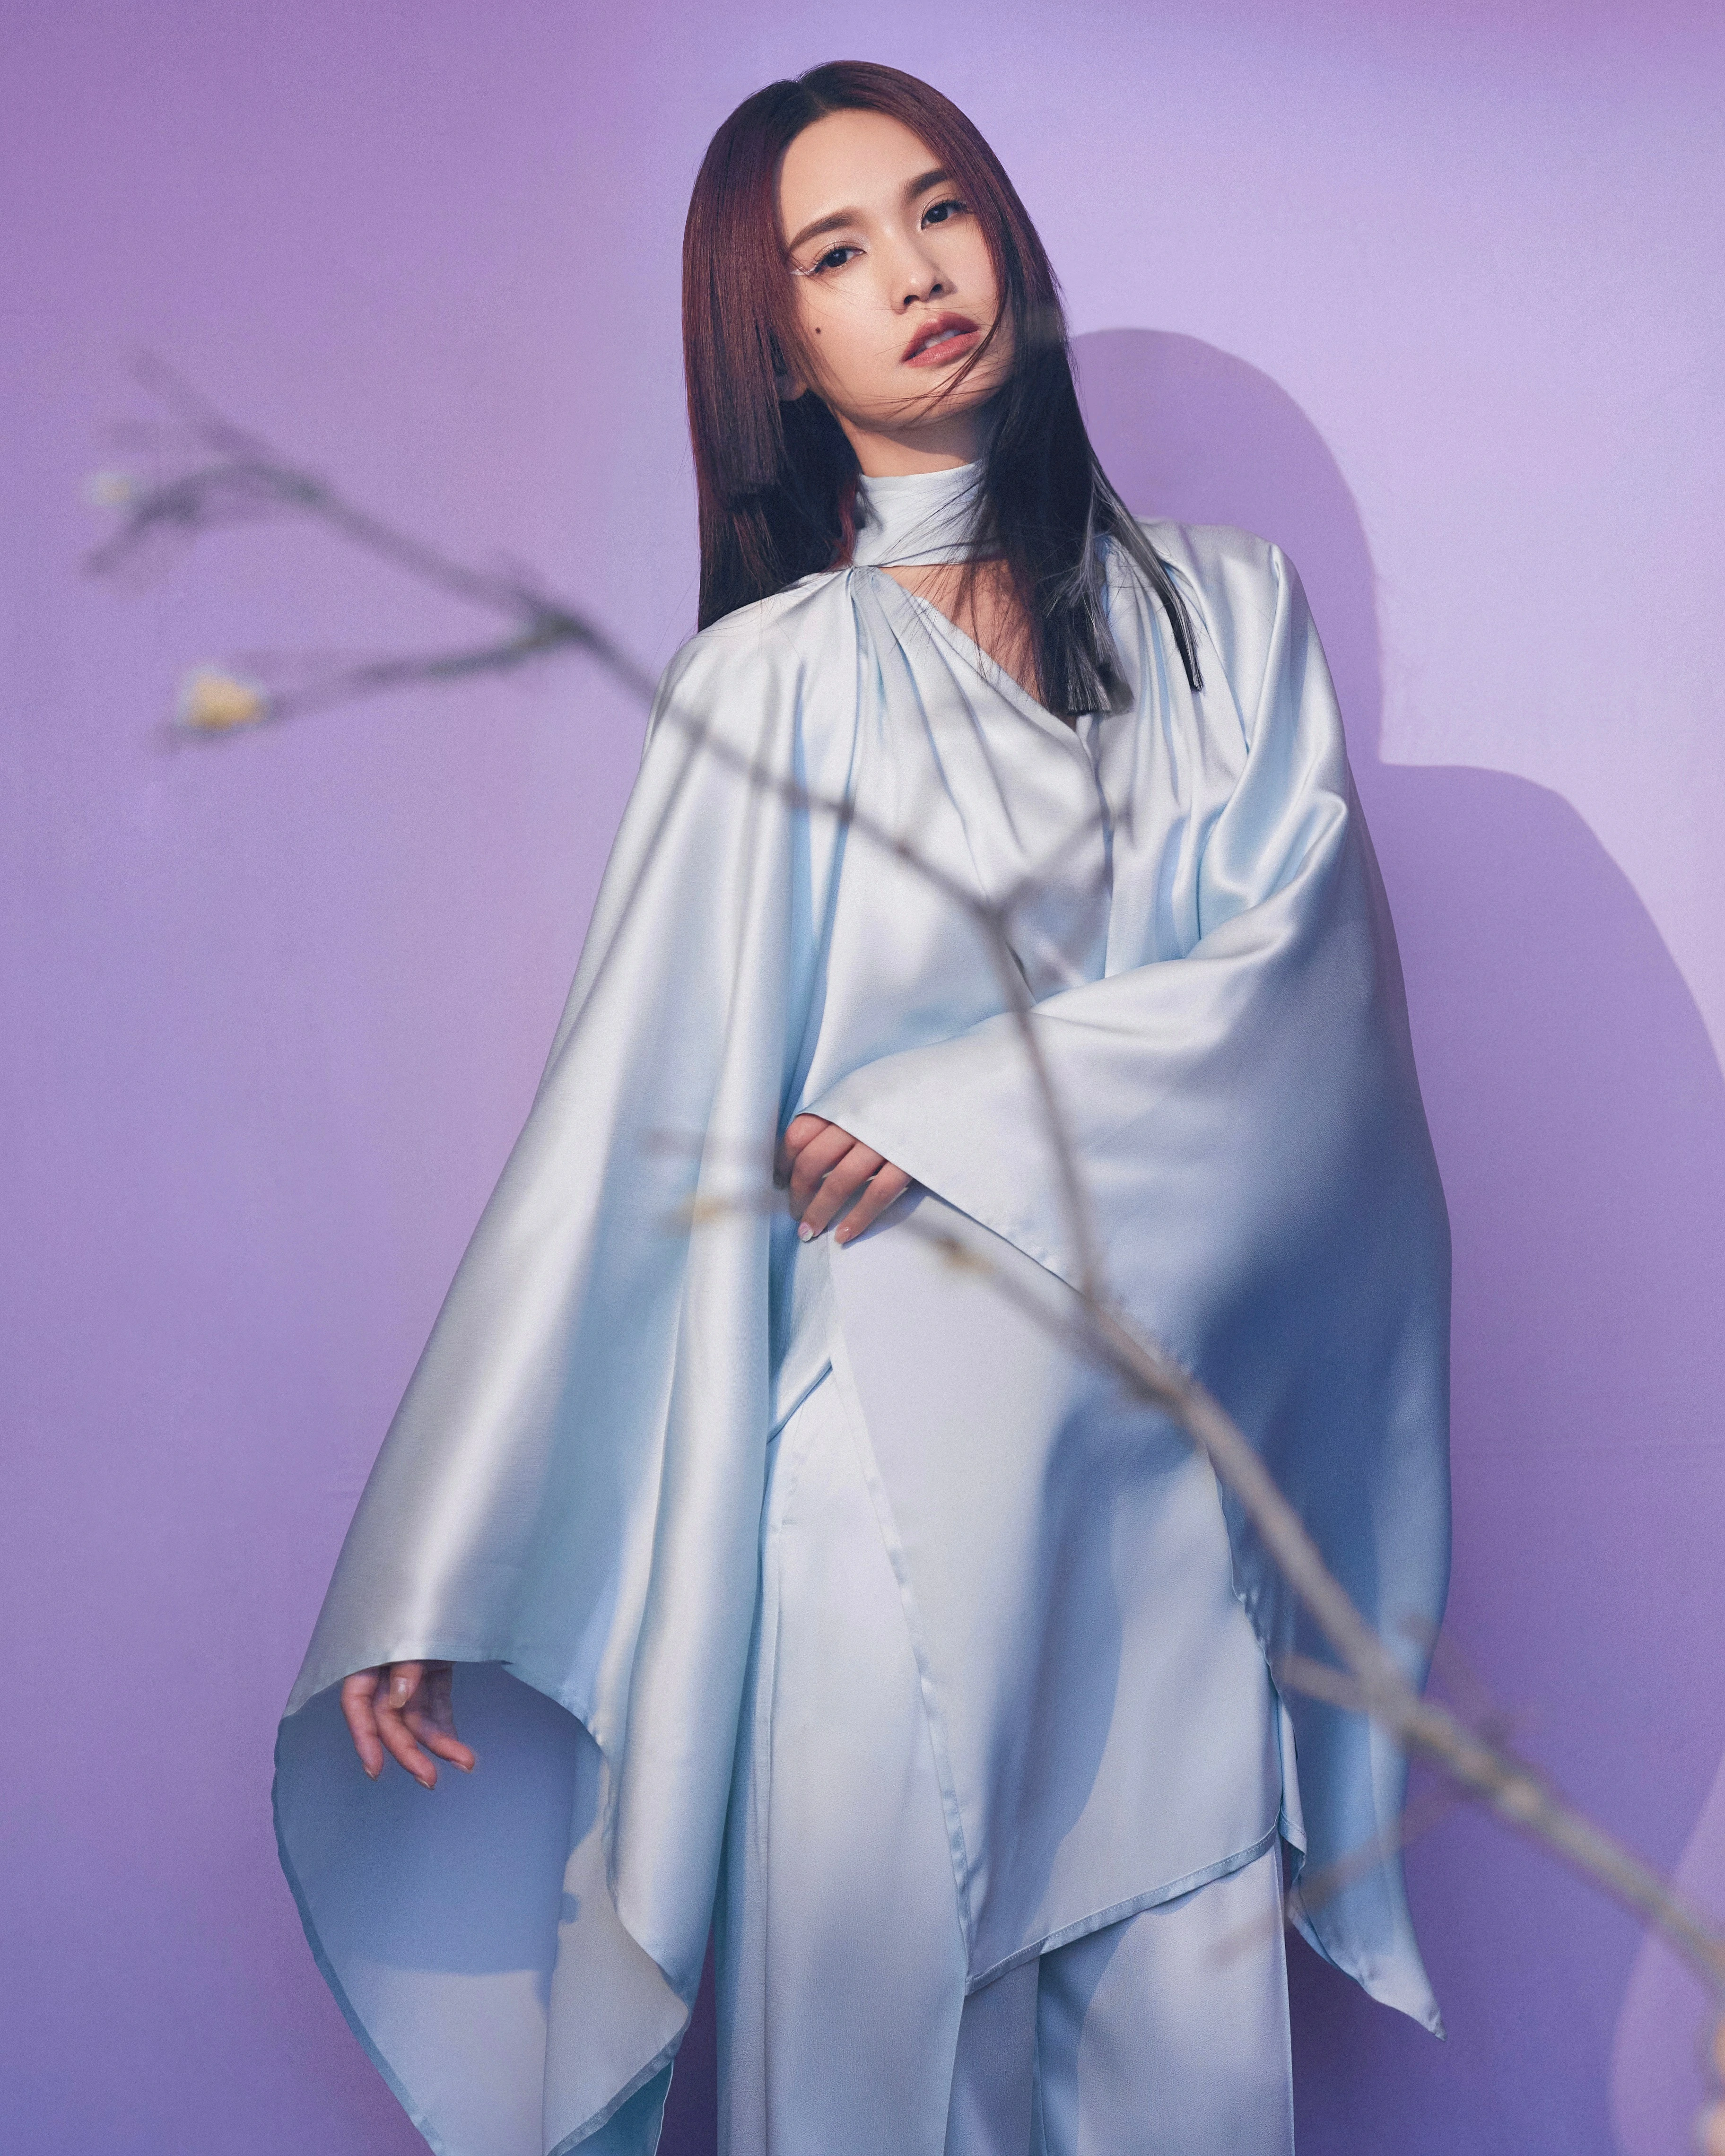 杨丞琳亮相本周《闪光的乐队》 挑染公主切造型带来《天堂》舞台,10